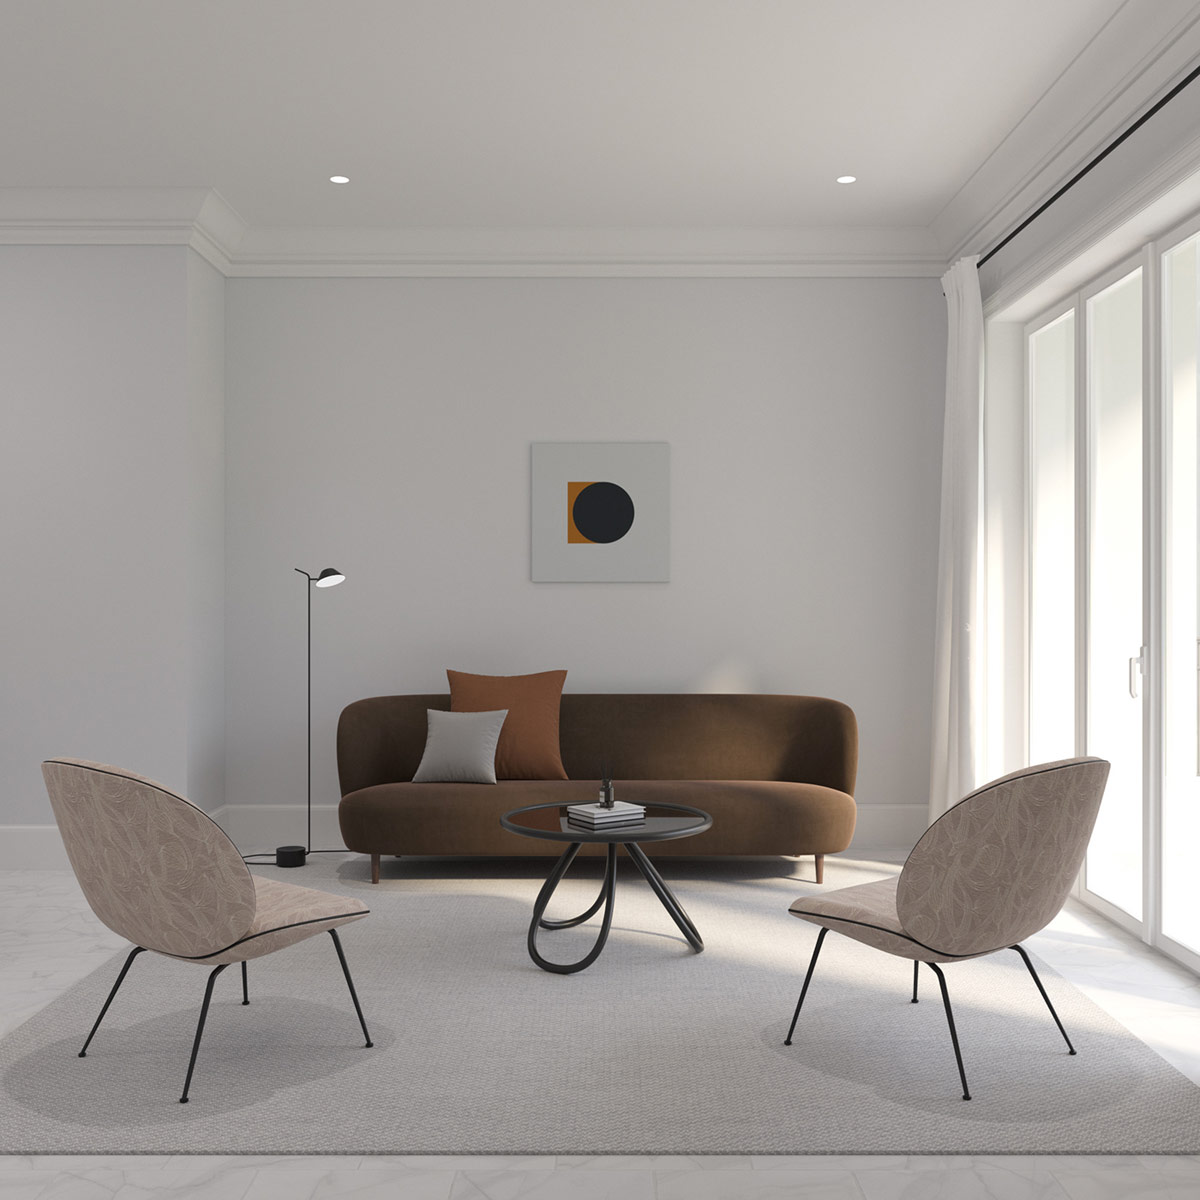 Trong phòng khách căn hộ tối giản, ghế sofa lưng cong được kết hợp với những chiếc ghế tròn trịa, bàn cà phê tròn và bức tường nghệ thuật với họa tiết cùng hình dạng.